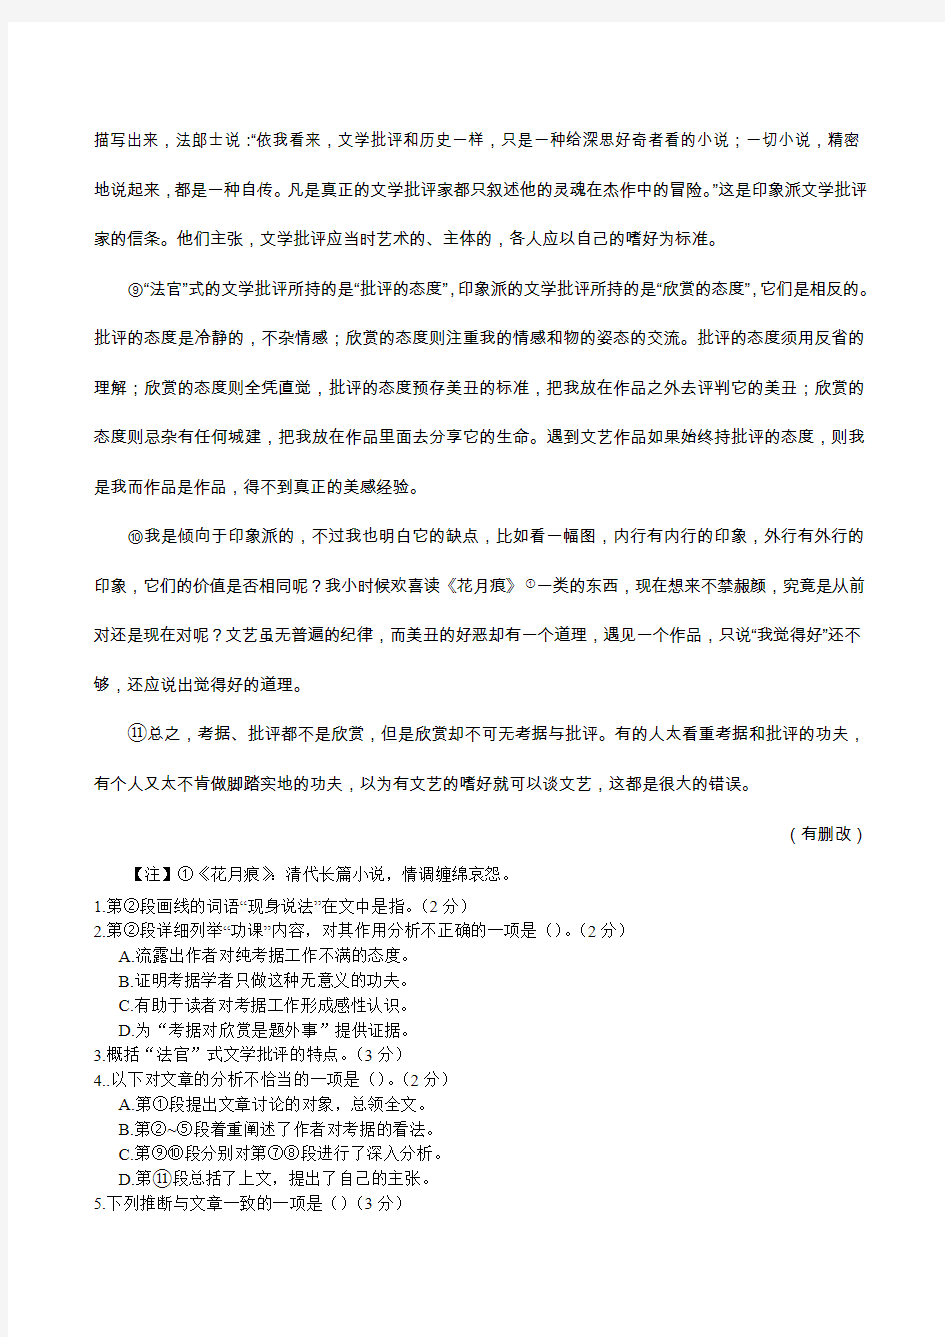 上海高考2016语文试卷(答案及解析)